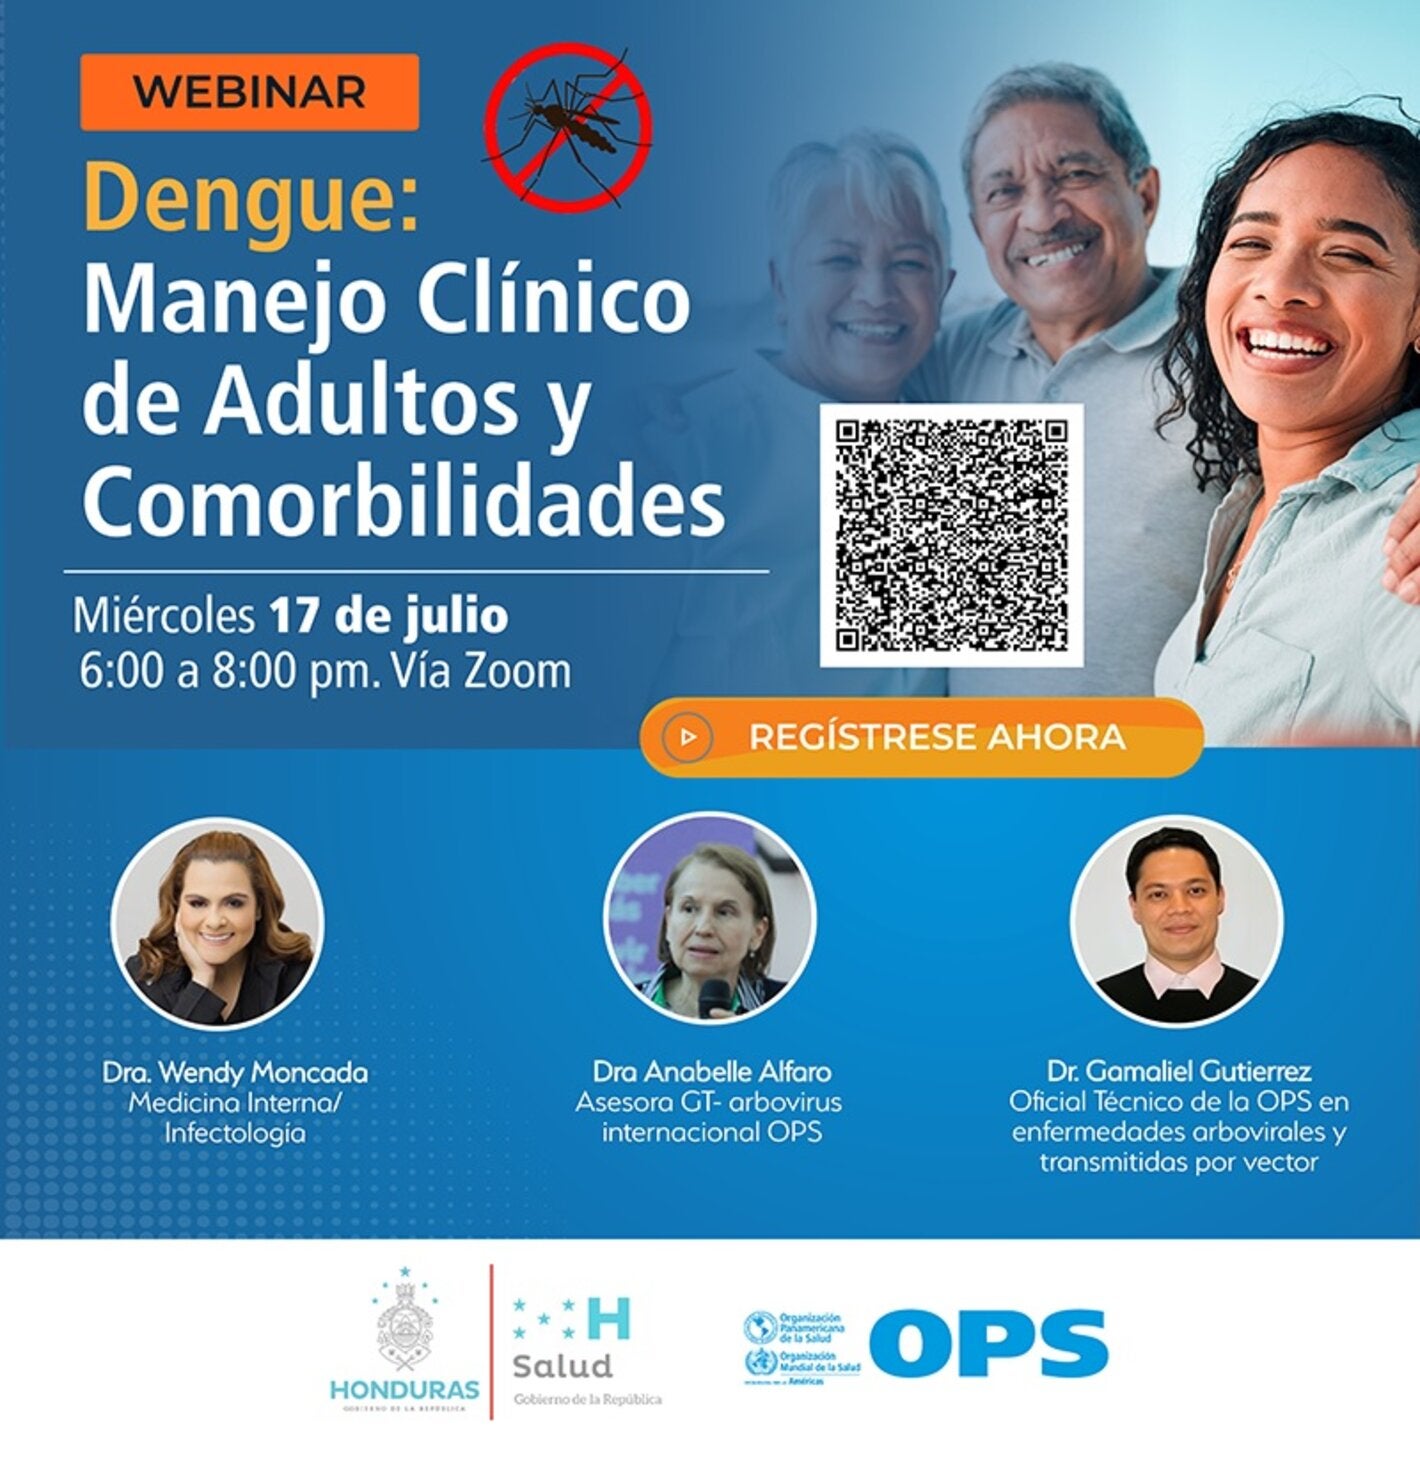 Invitacion a webinario sobre dengue, manejo clínico de adultos y comorbilidades